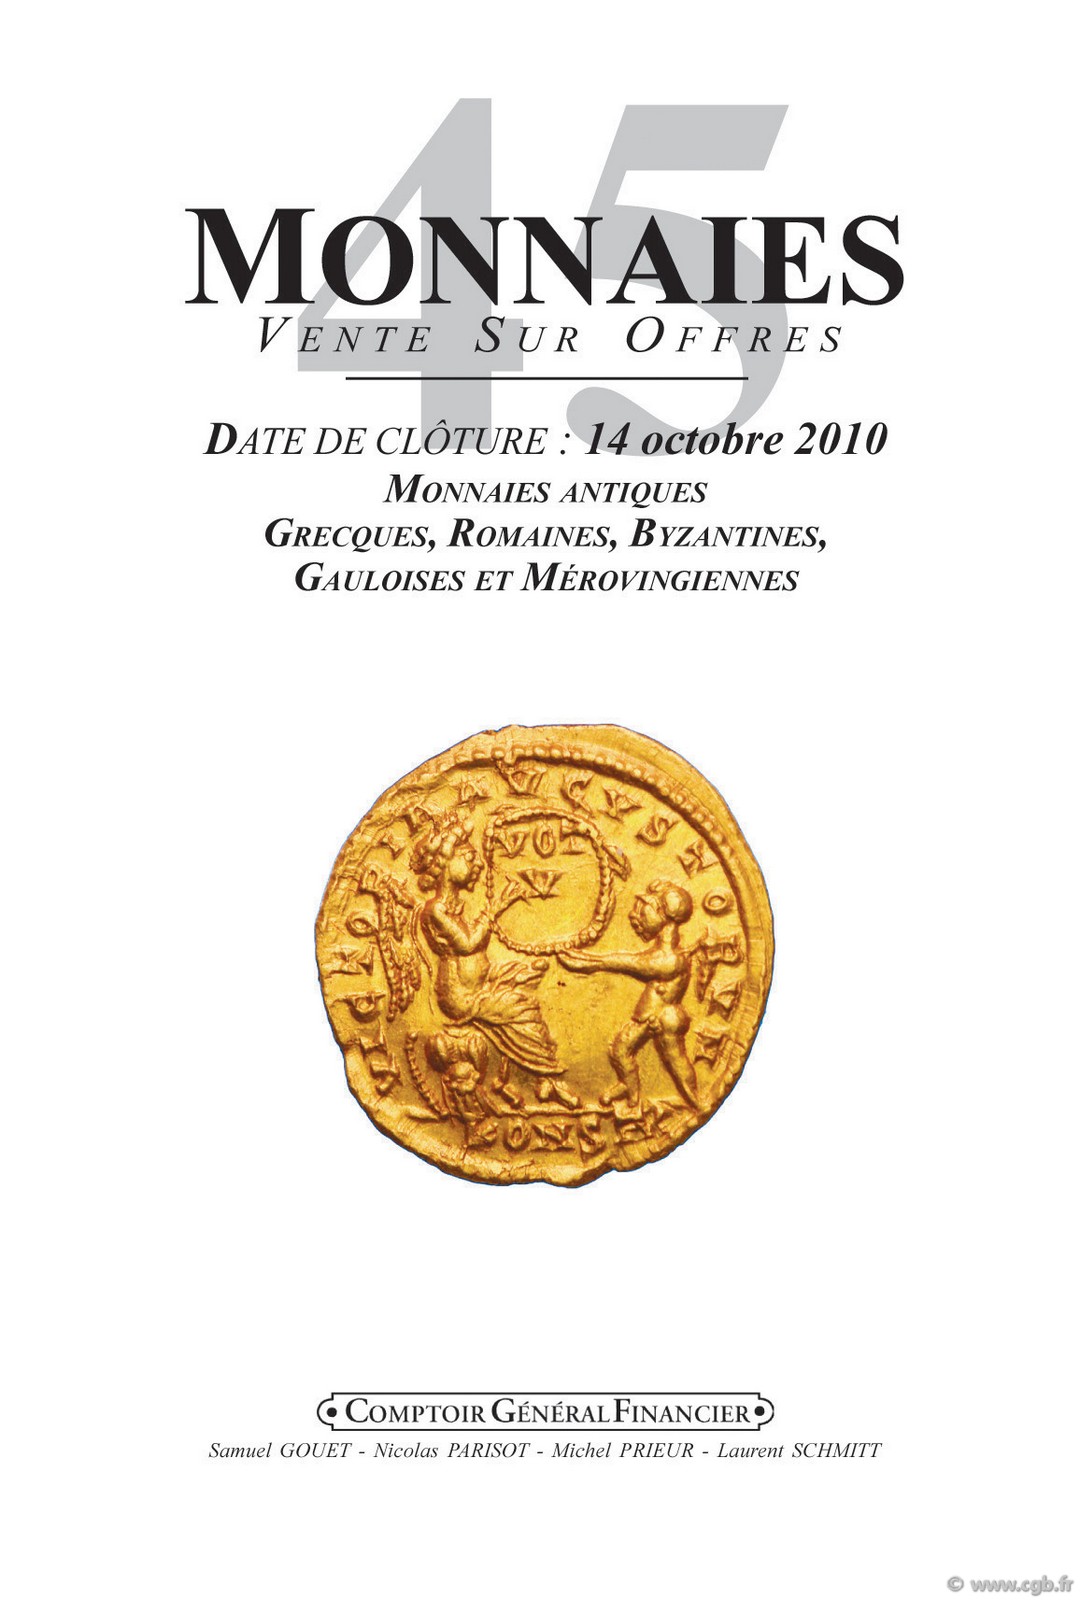 Monnaies 45, monnaies antiques GOUET Samuel, PARISOT Nicolas, PRIEUR Michel, SCHMITT Laurent